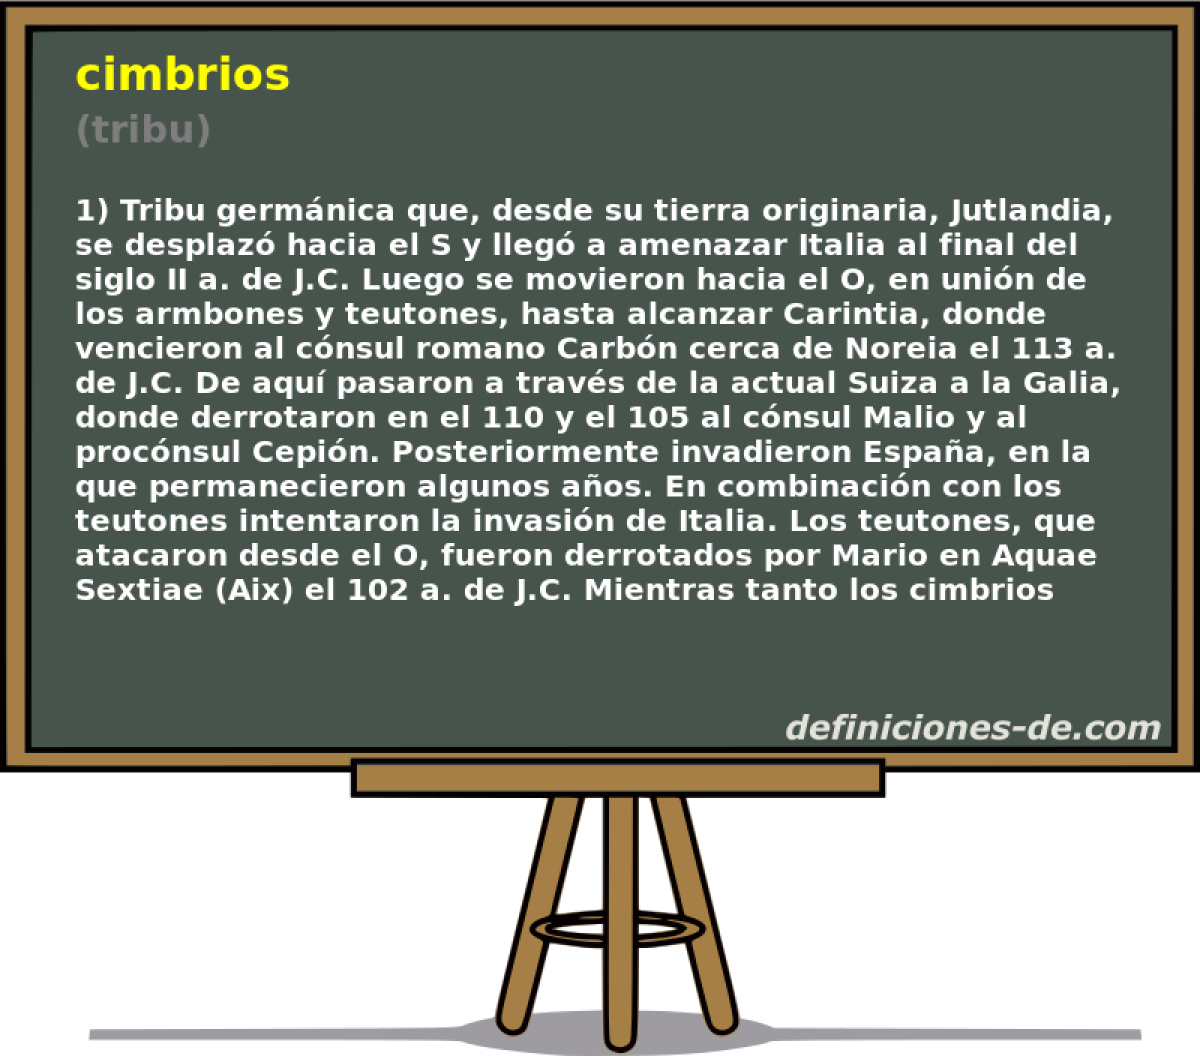 cimbrios (tribu)